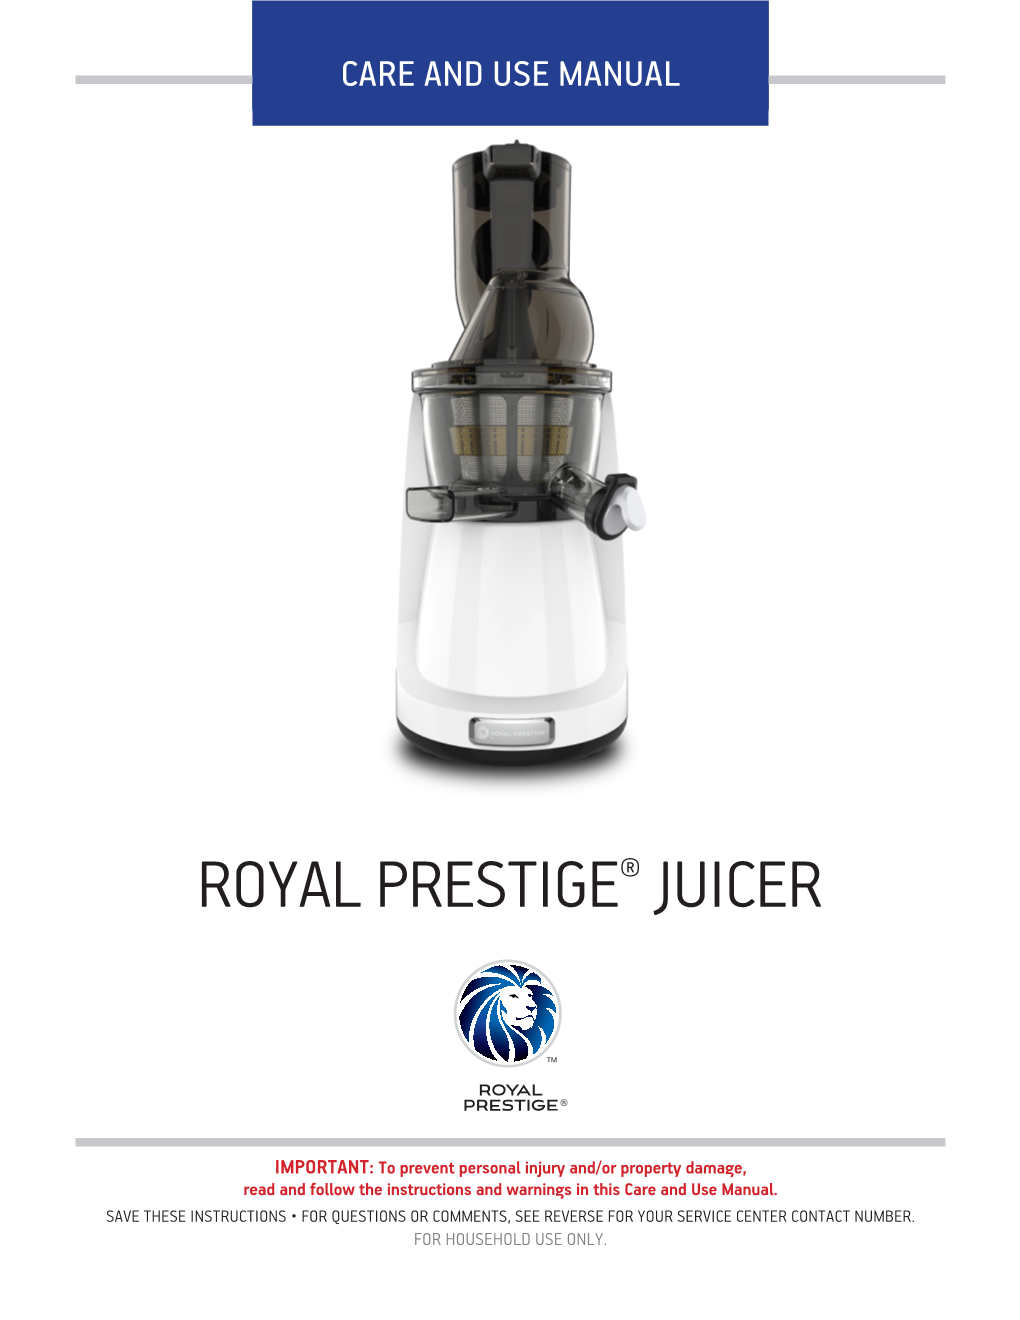 Royal Prestige® Juicer